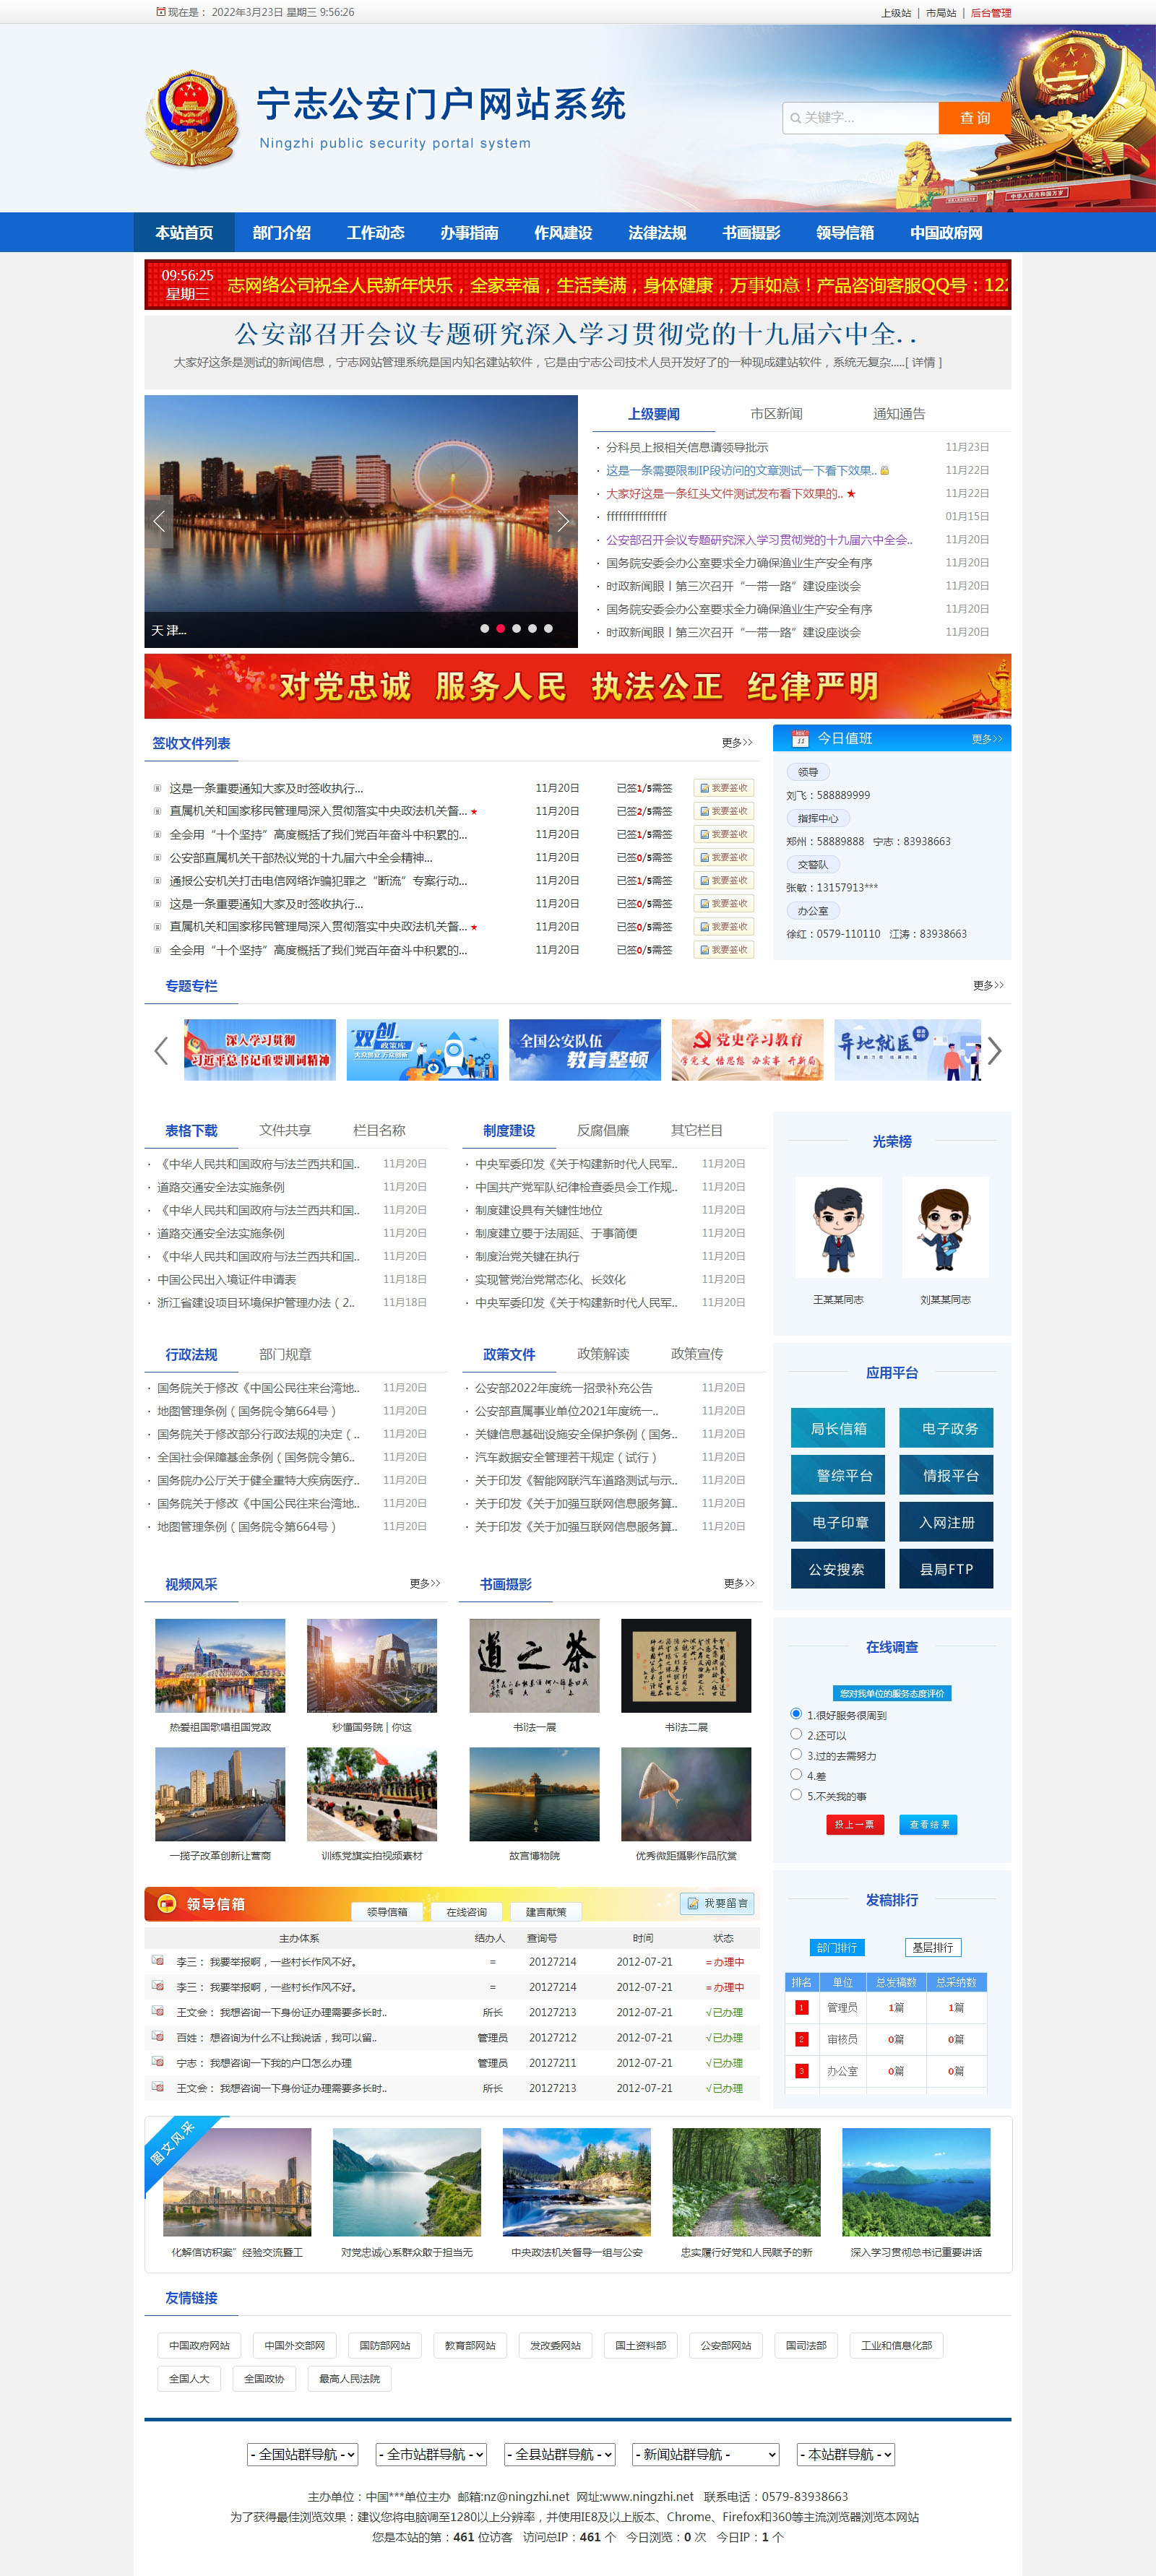 宁志公安局派出所门户网站管理系统 最新版